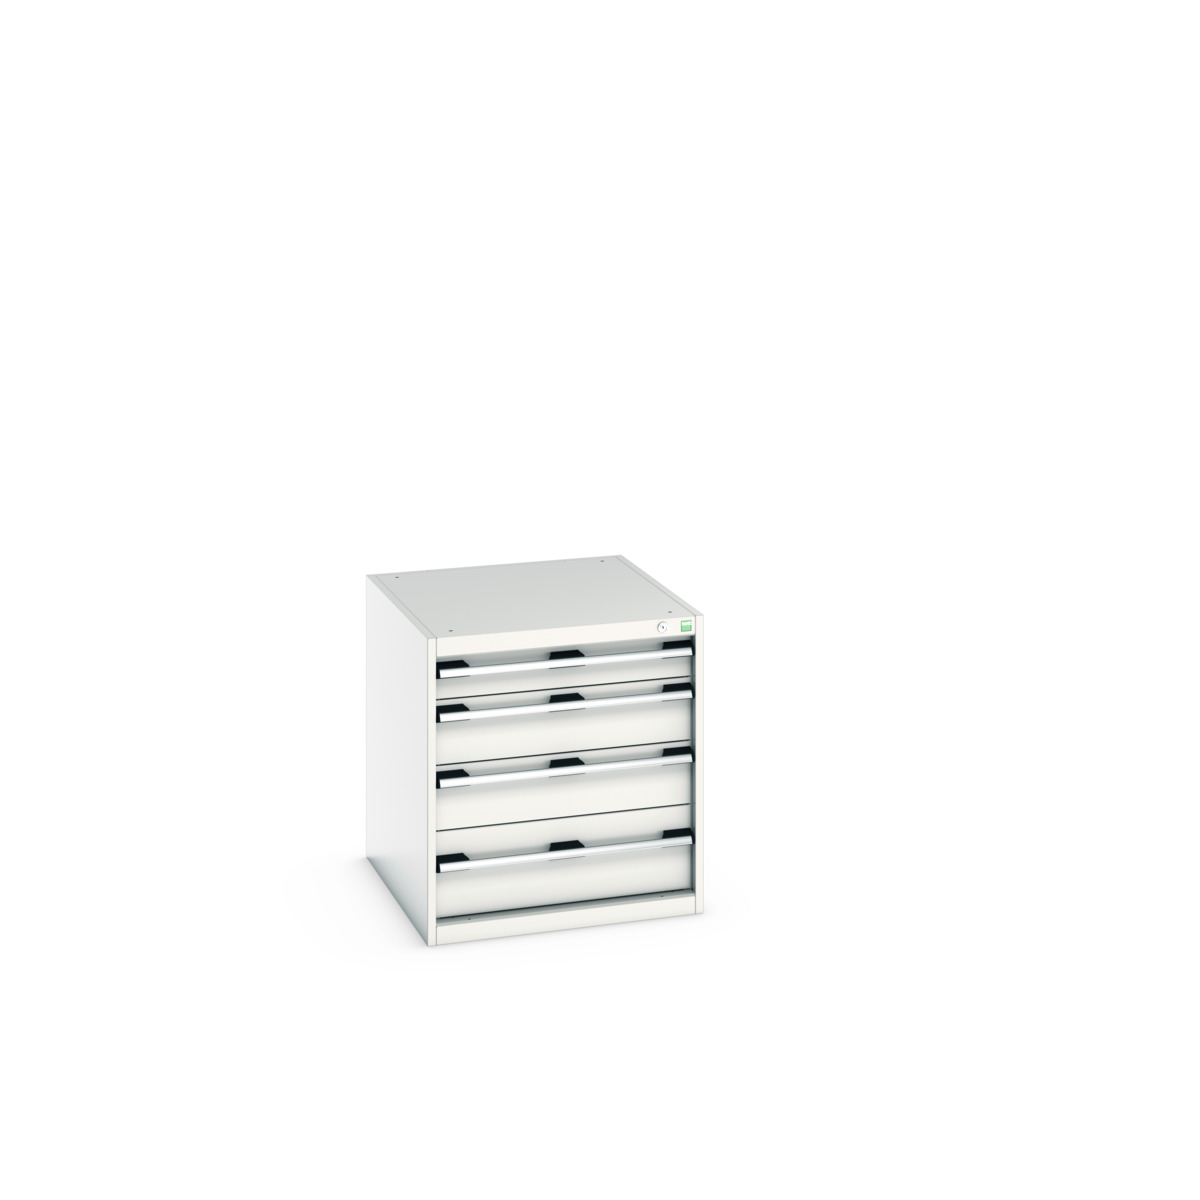 40027005.16V - cubio drawer cabinet